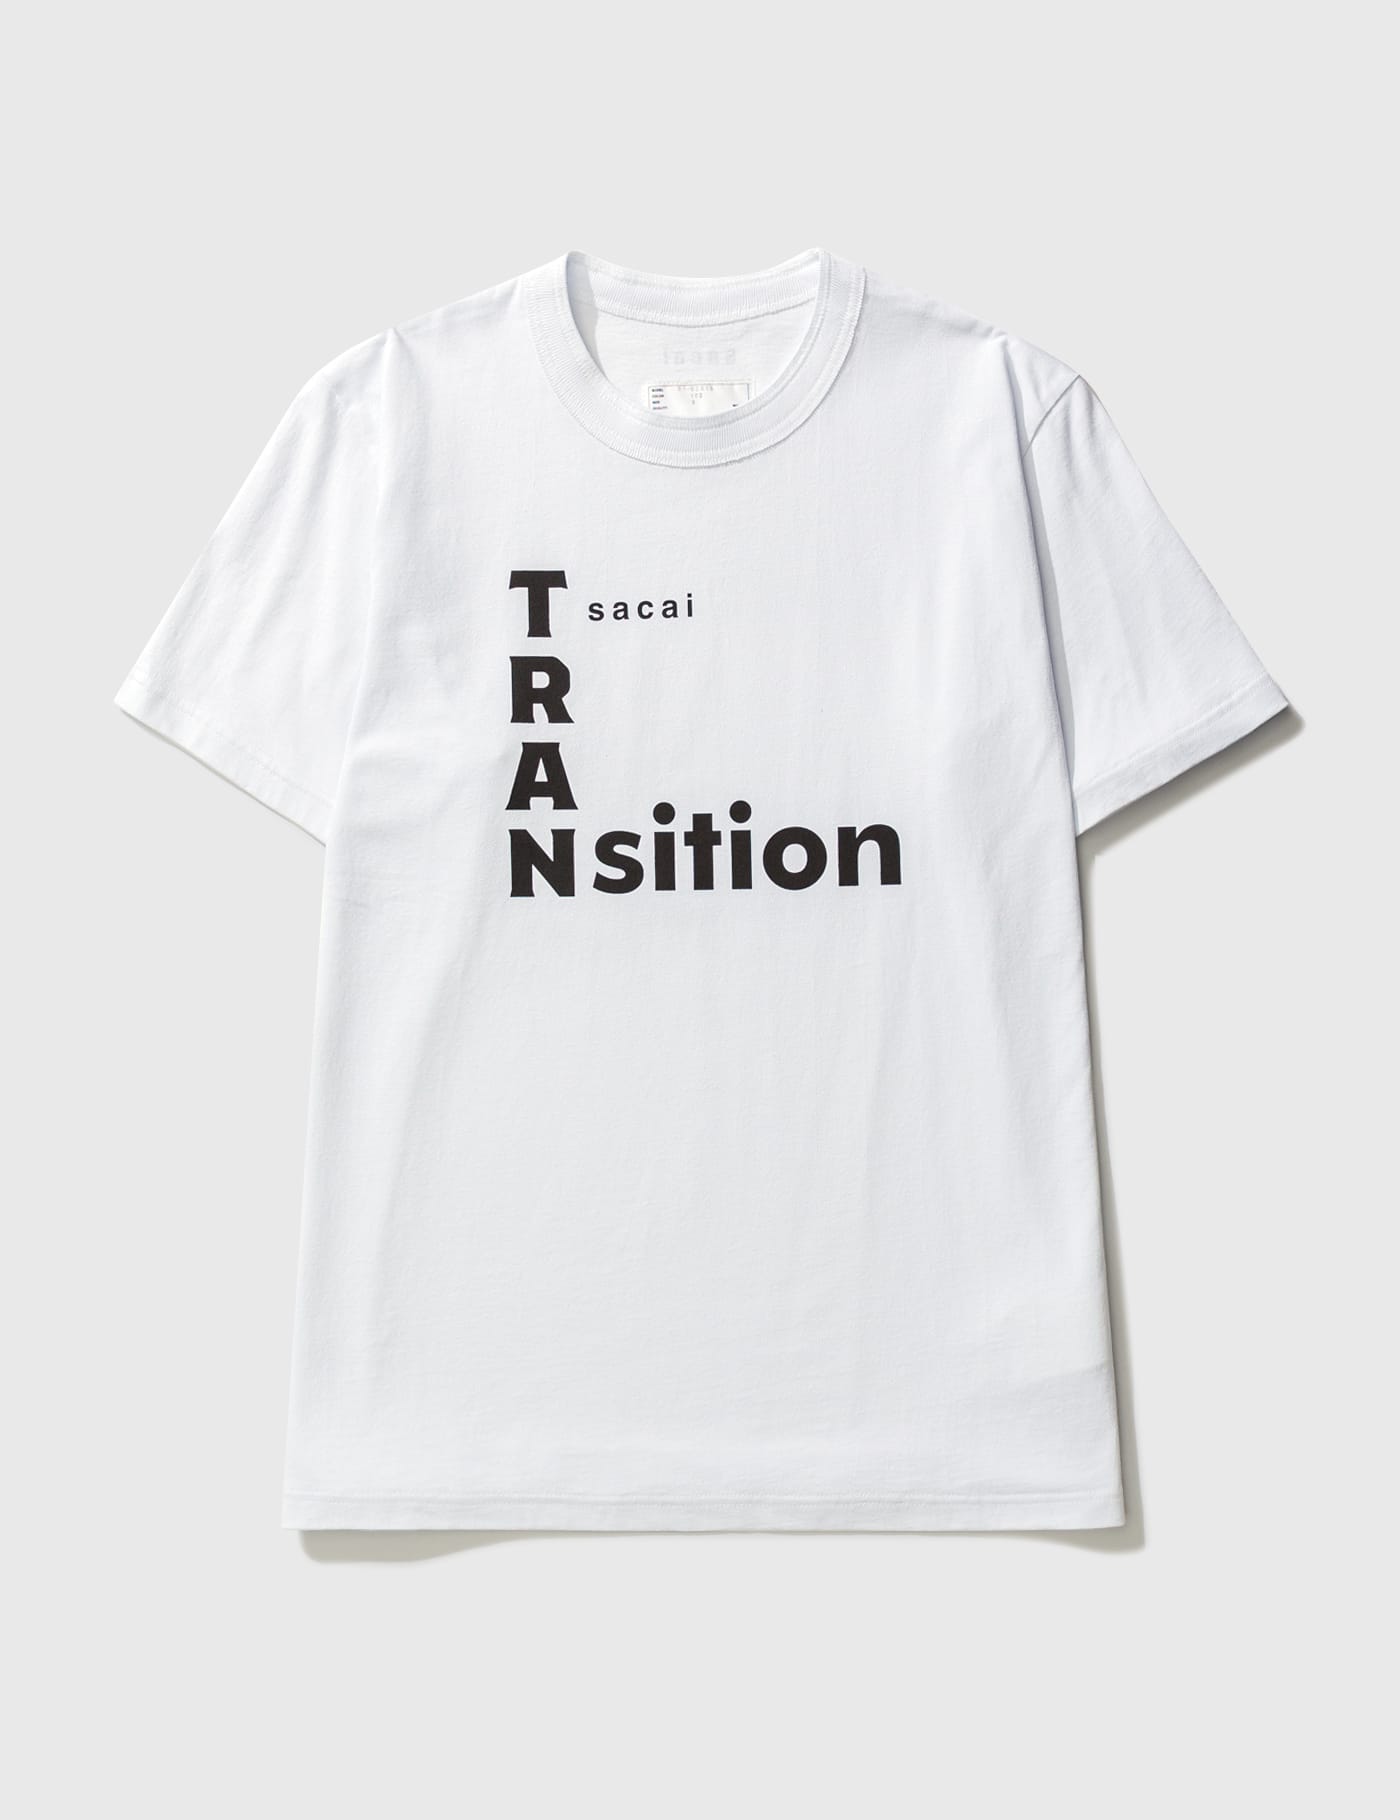 Sacai - TRANsition Tシャツ | HBX - ハイプビースト(Hypebeast)が厳選 